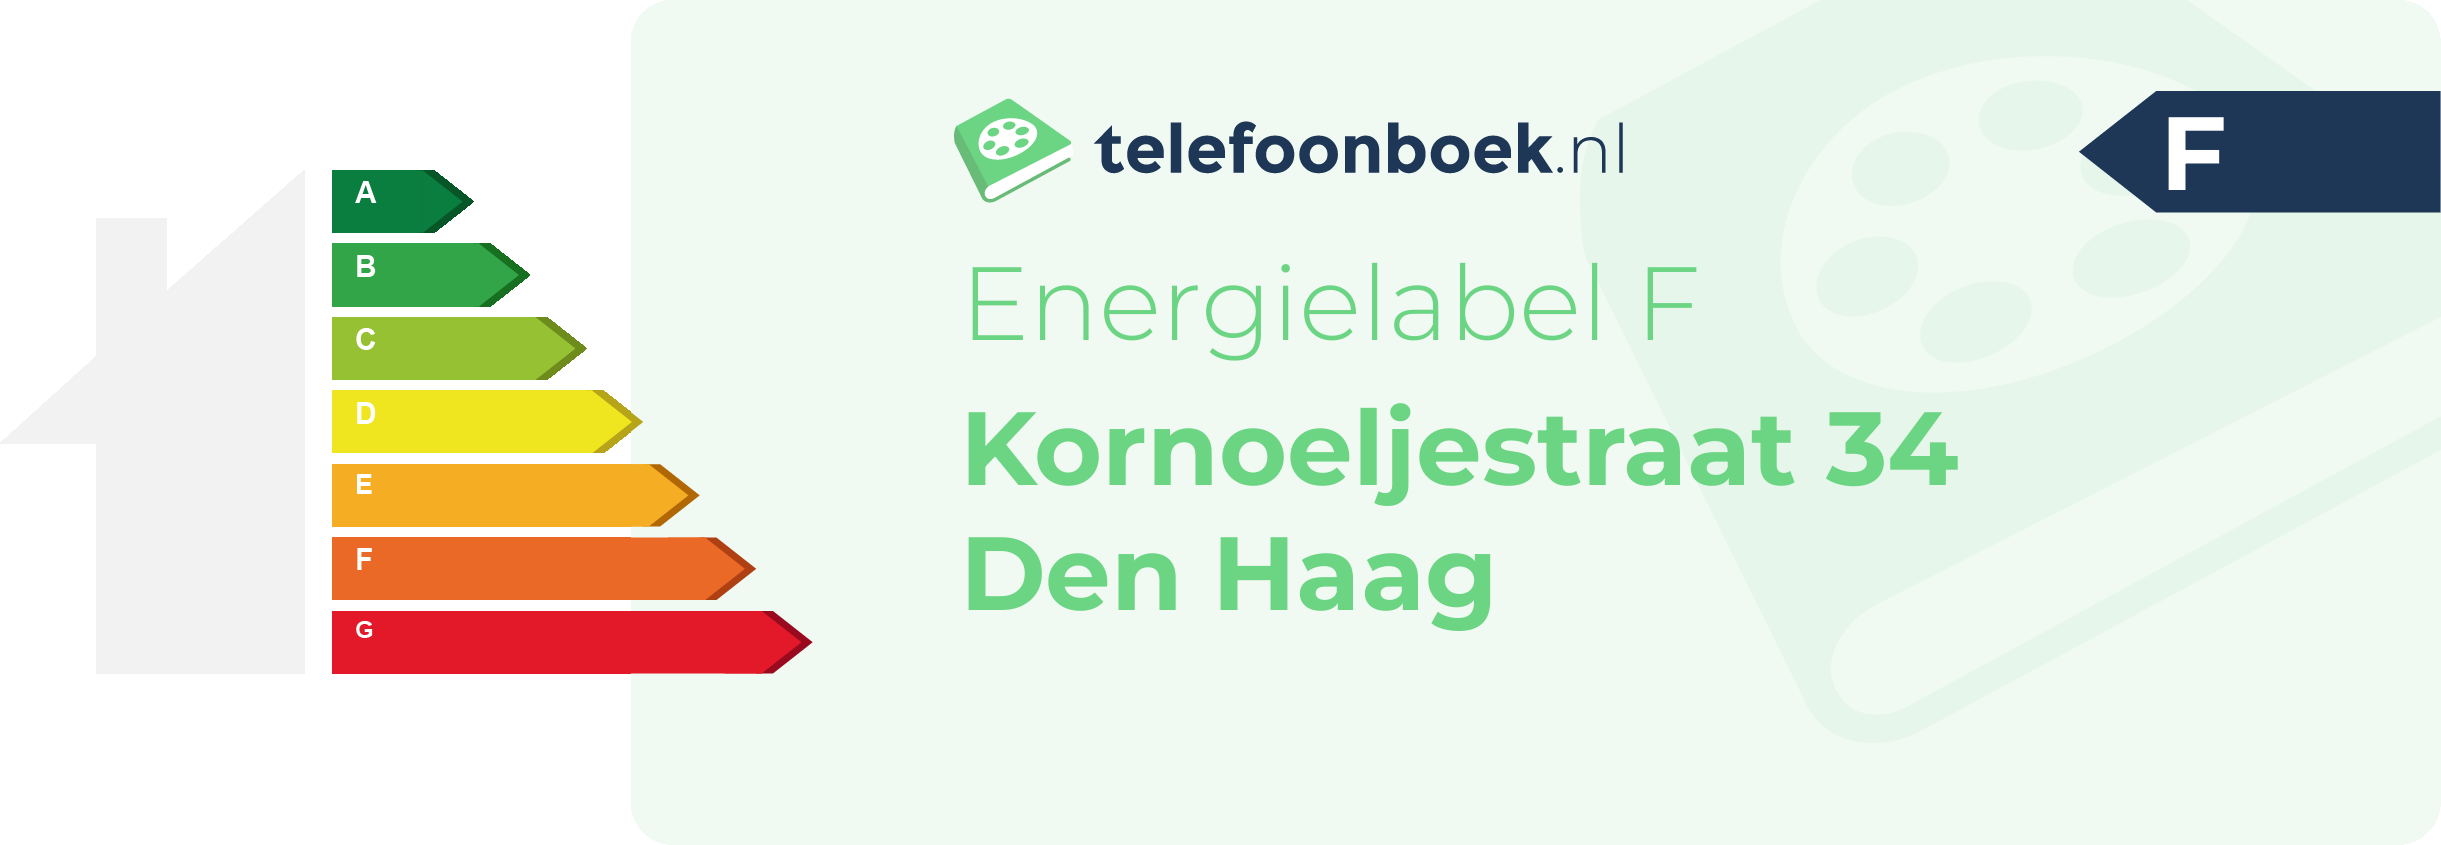 Energielabel Kornoeljestraat 34 Den Haag